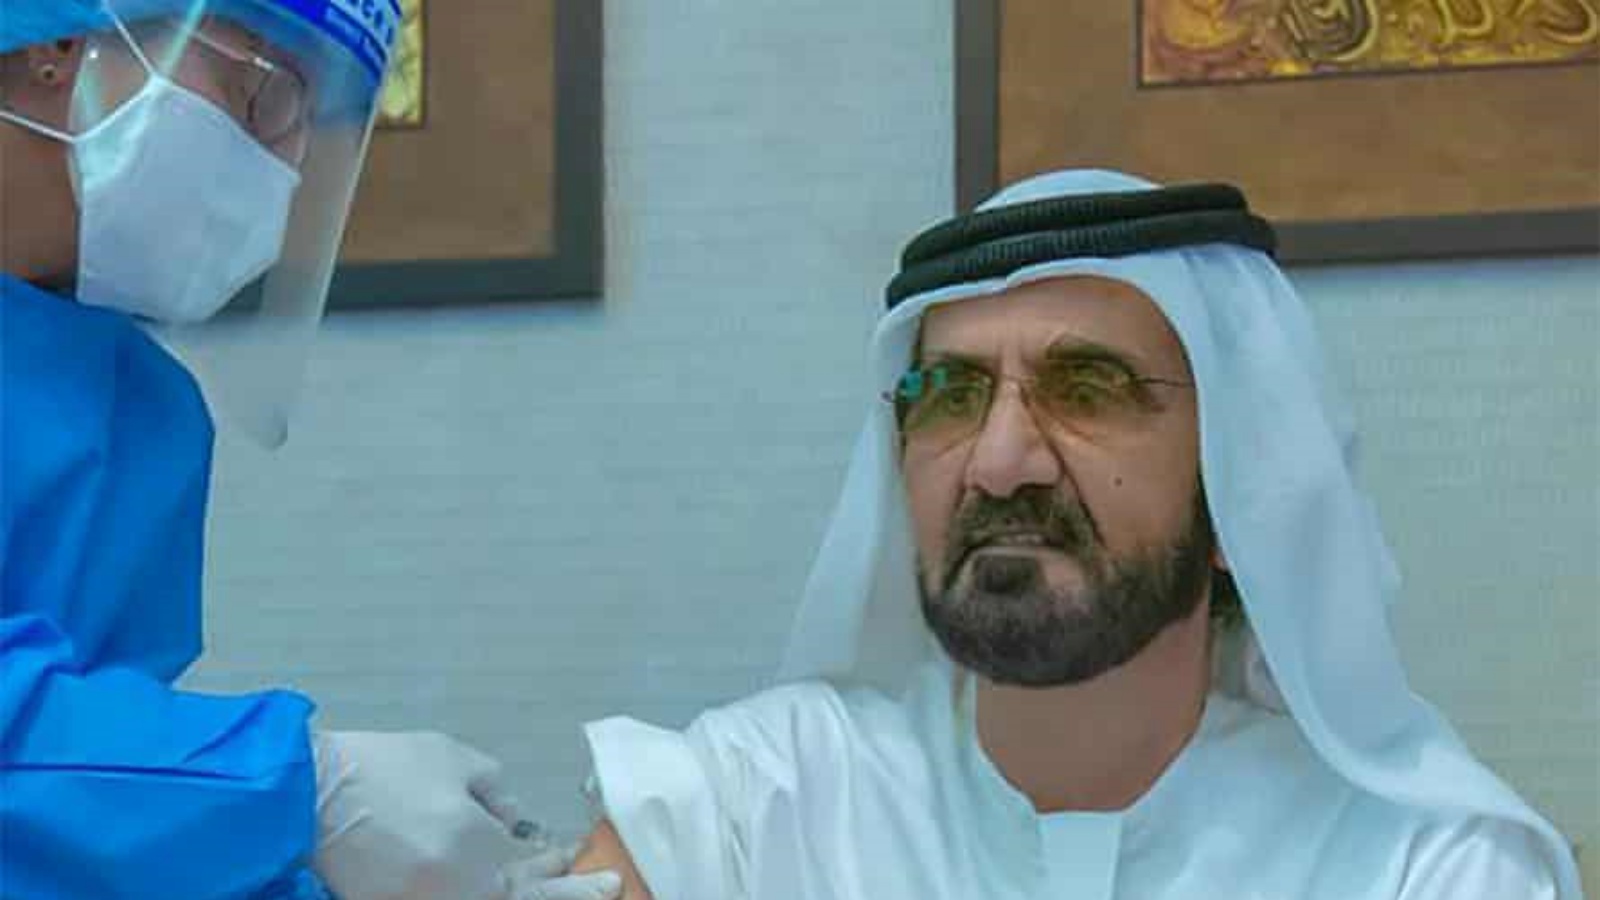 حاكم دبي الشيخ محمد بن راشد آل مكتوم يتلقى لقاح سينوفارم كجزء من تجربة الإمارات. الأربعاء 9 كانون الأول/ ديسمبر 2020.